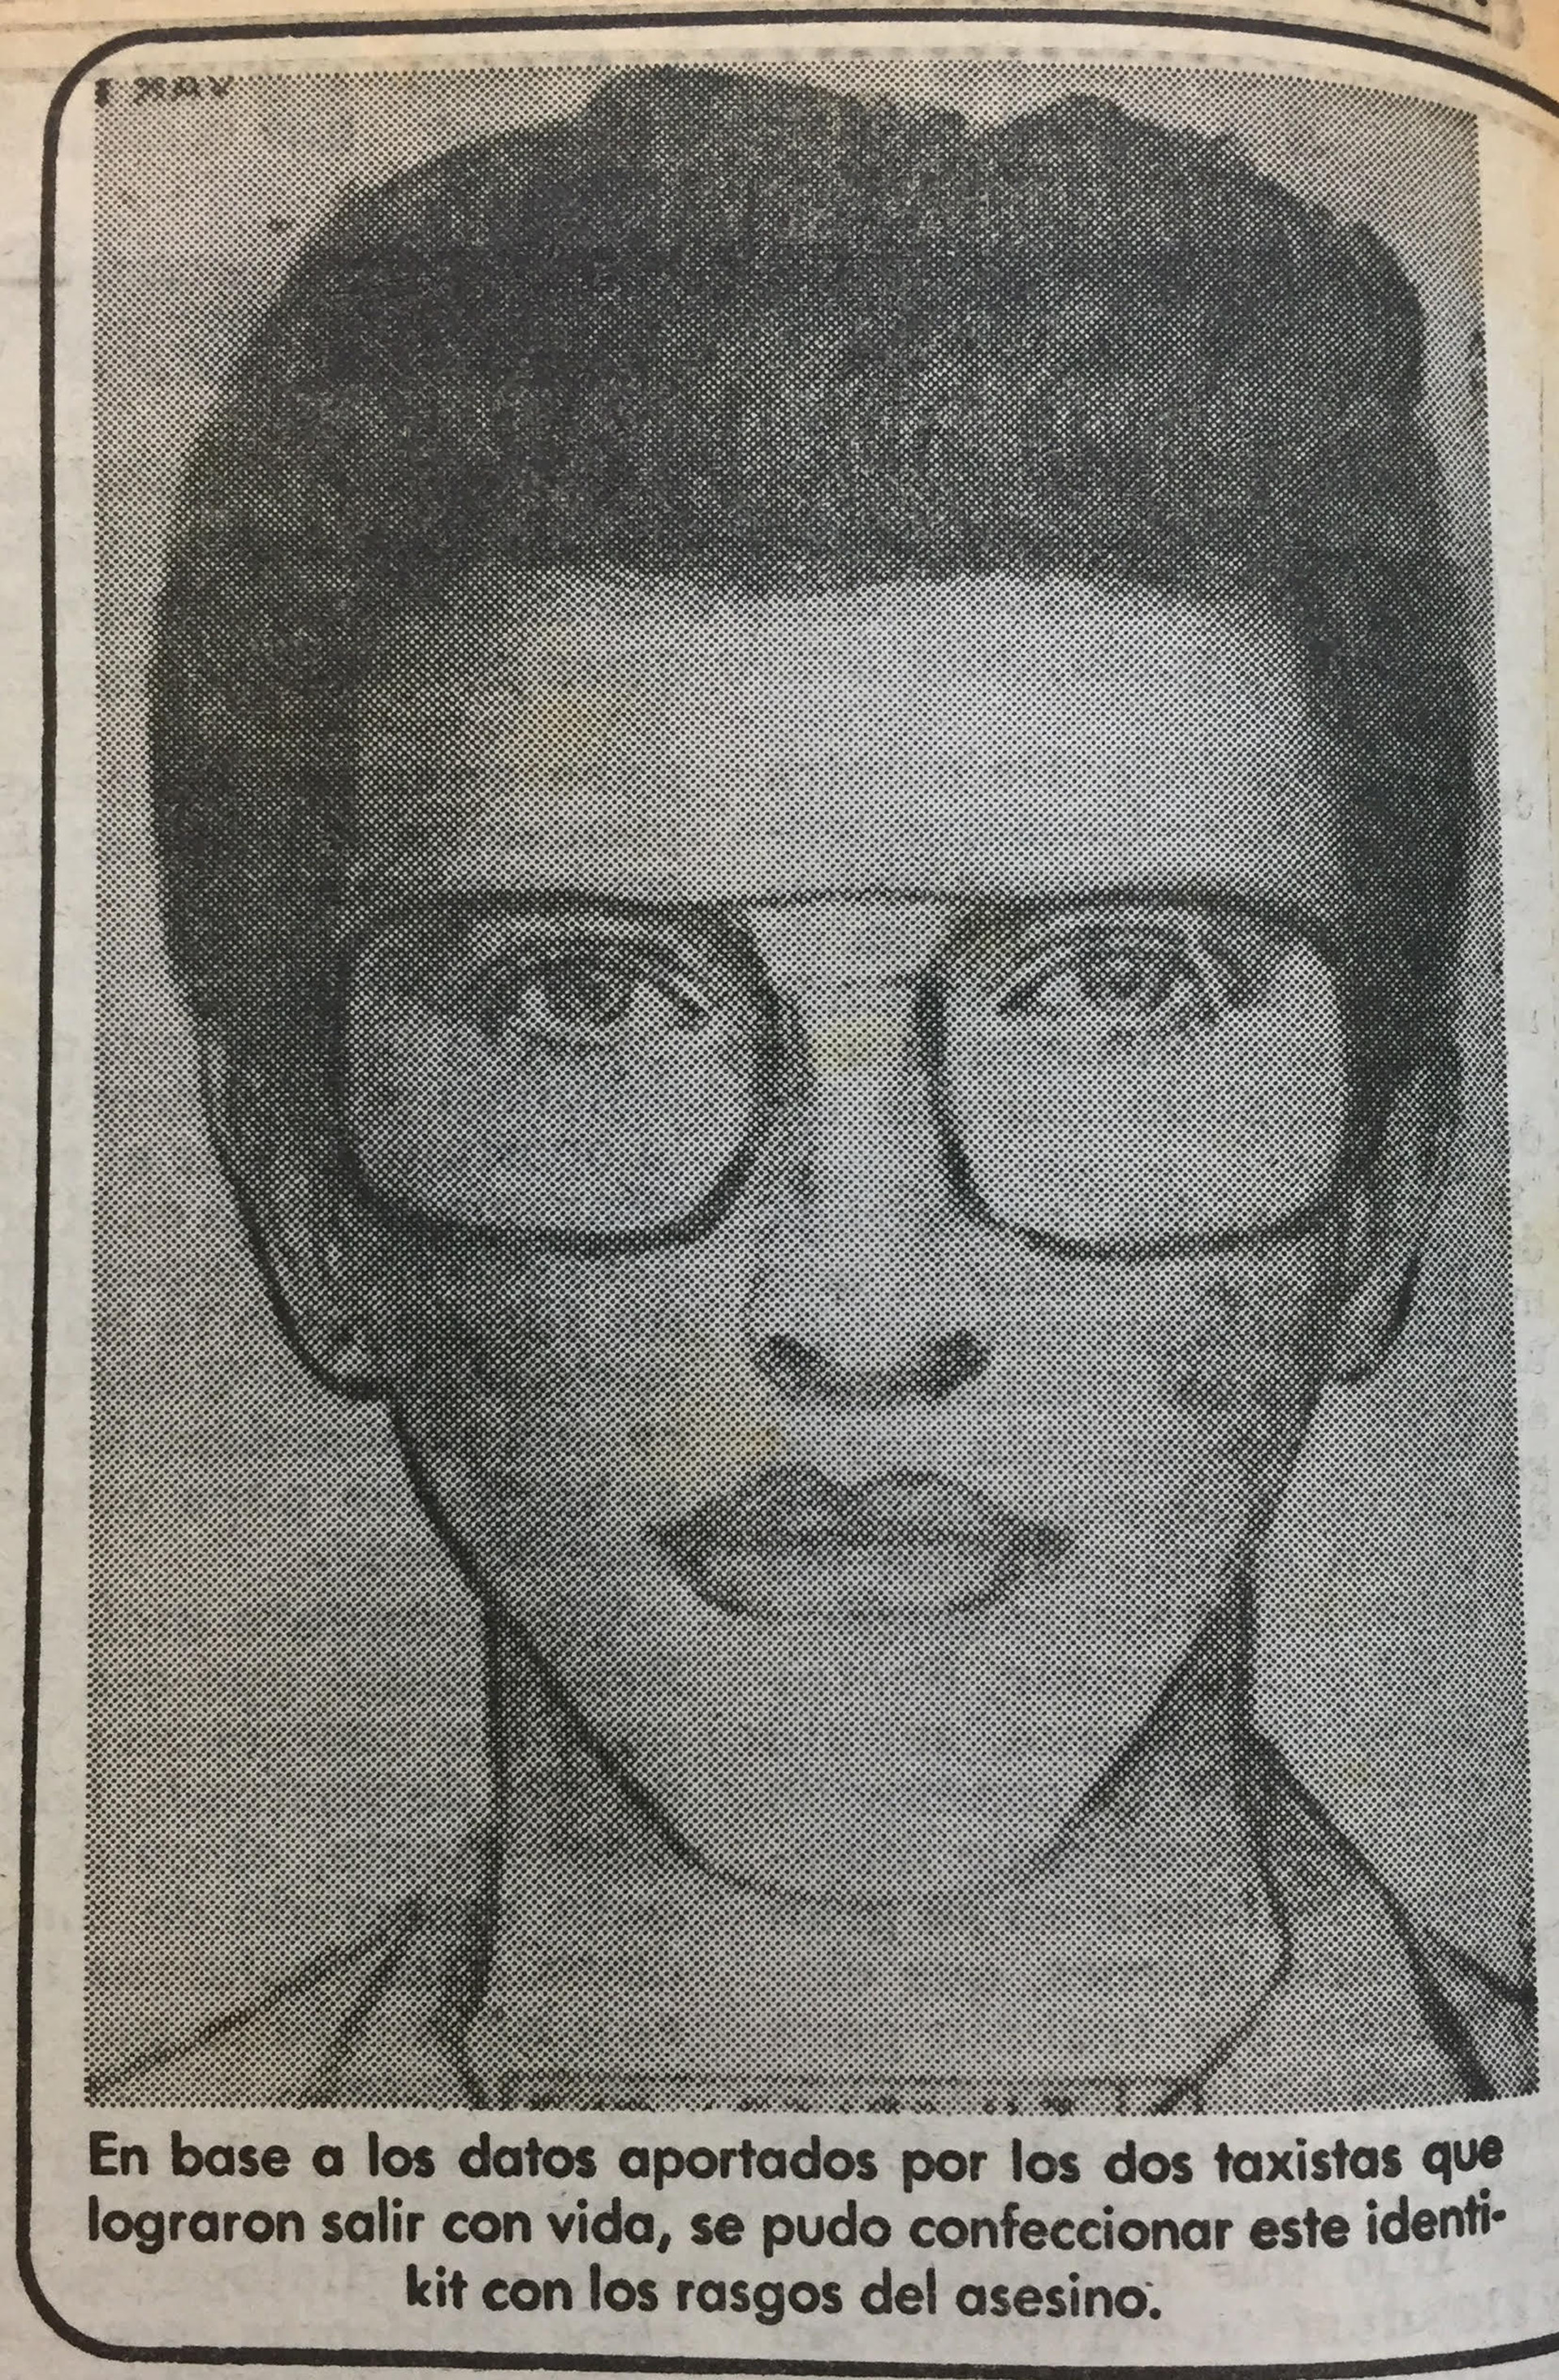 La policía hizo circular un identikit del sospechoso (Diario Clarín, 12 de octubre de 1982)